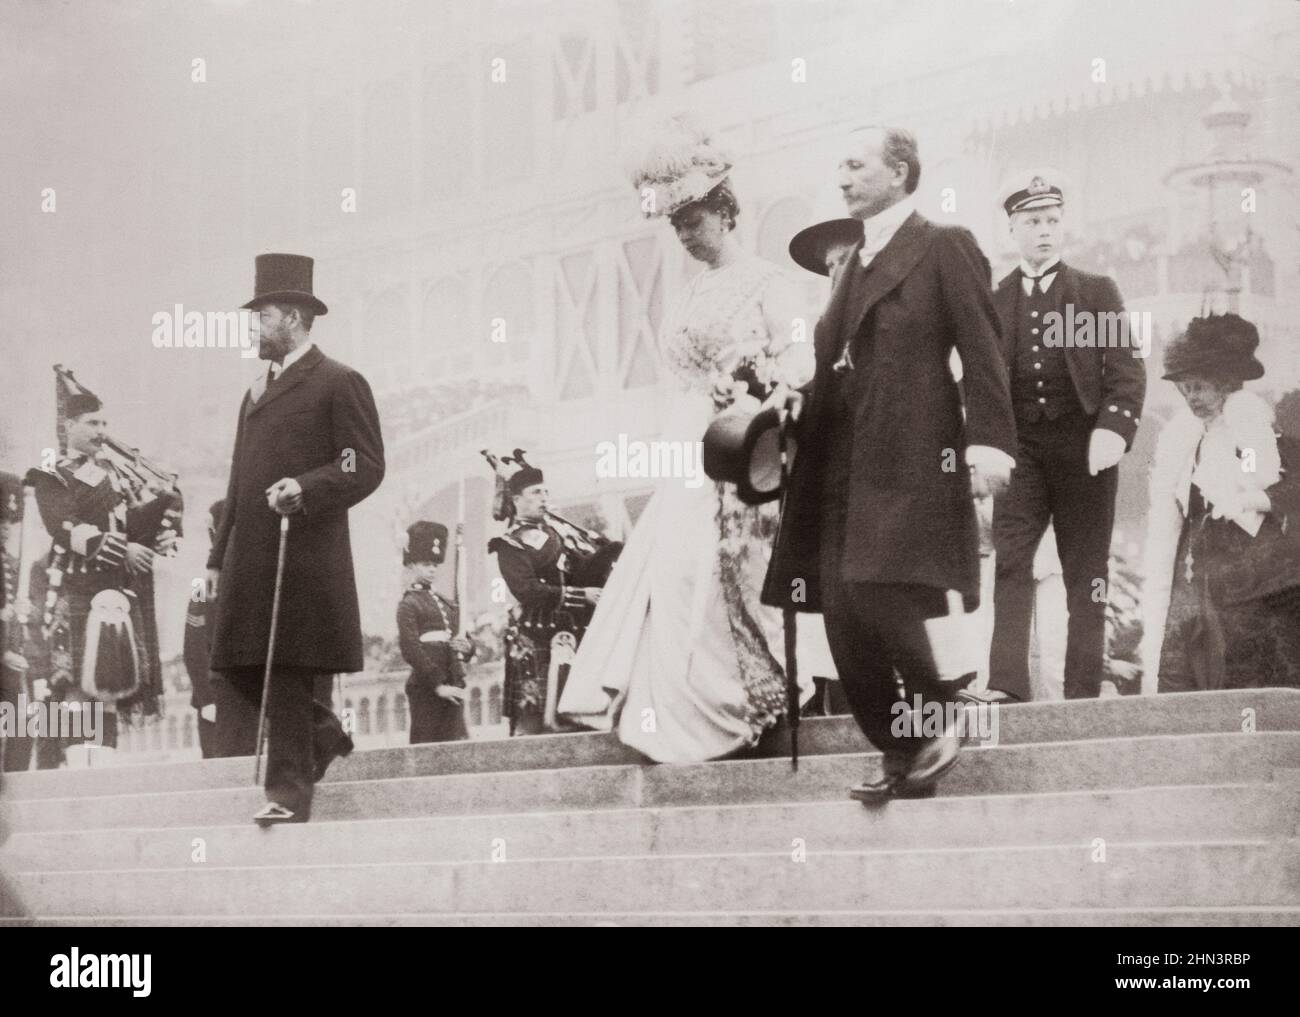 Vintage-Foto von König George V des Vereinigten Königreichs, Queen Mary, Earl Plymouth und dem Prince of Wales (George VI) bei der Eröffnung des Festivals von Stockfoto